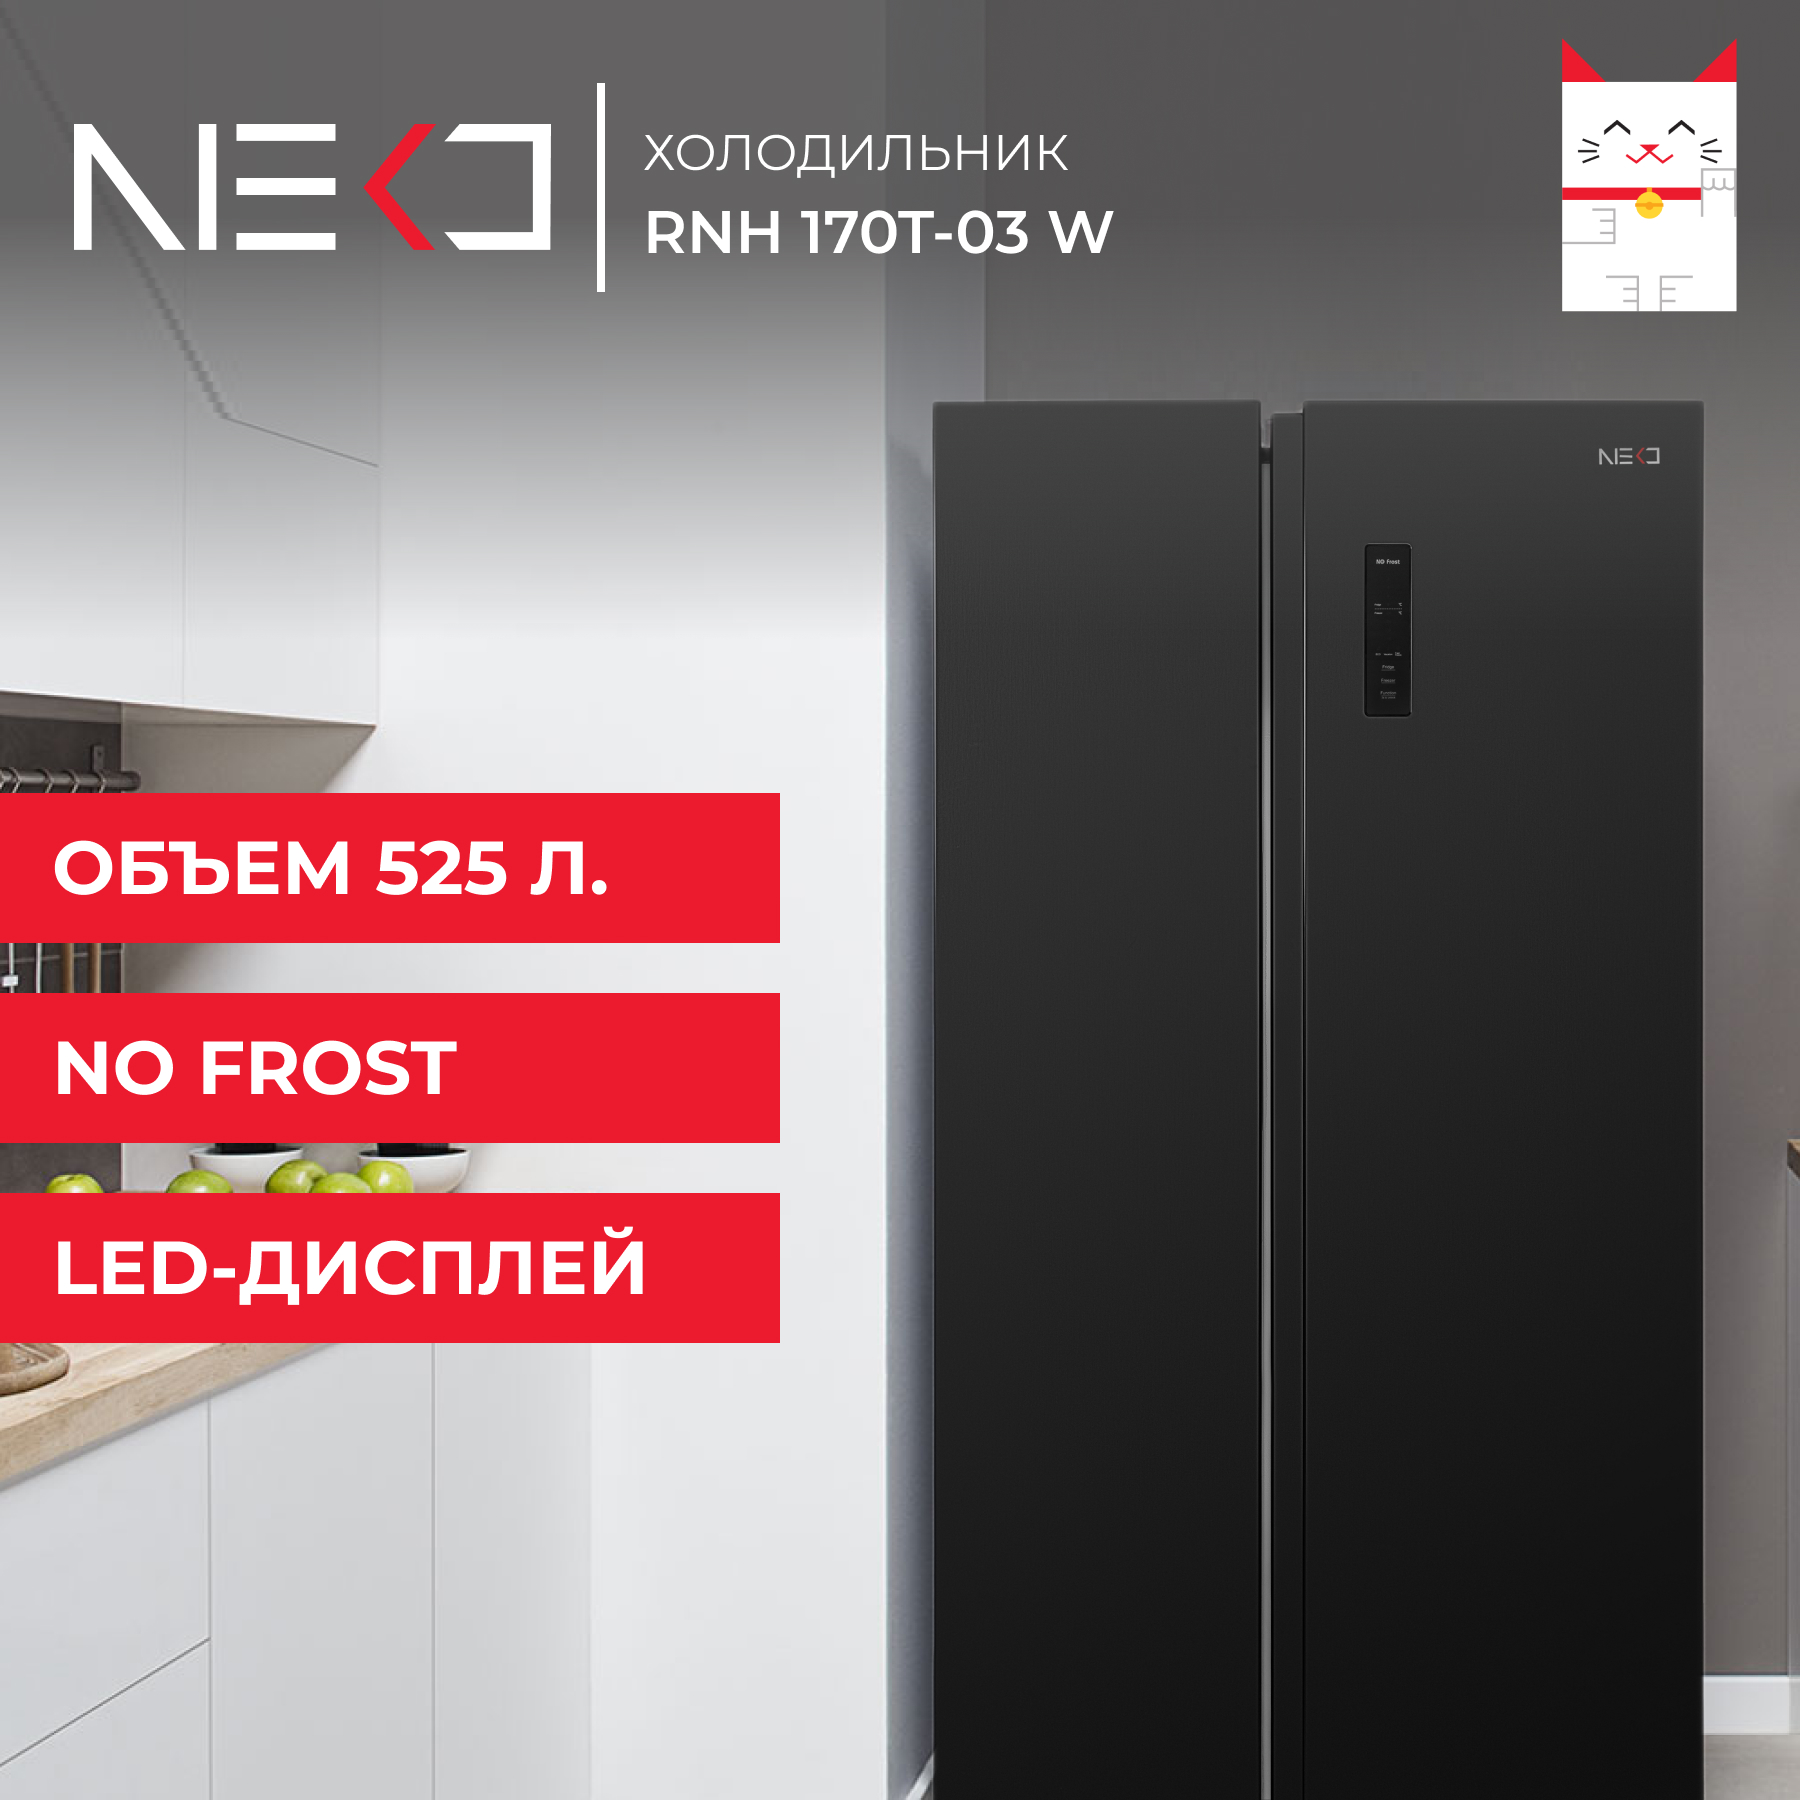 Холодильник Neko RNH 170T-03 W черный государство и право в период кризиса современной цивилизации монография